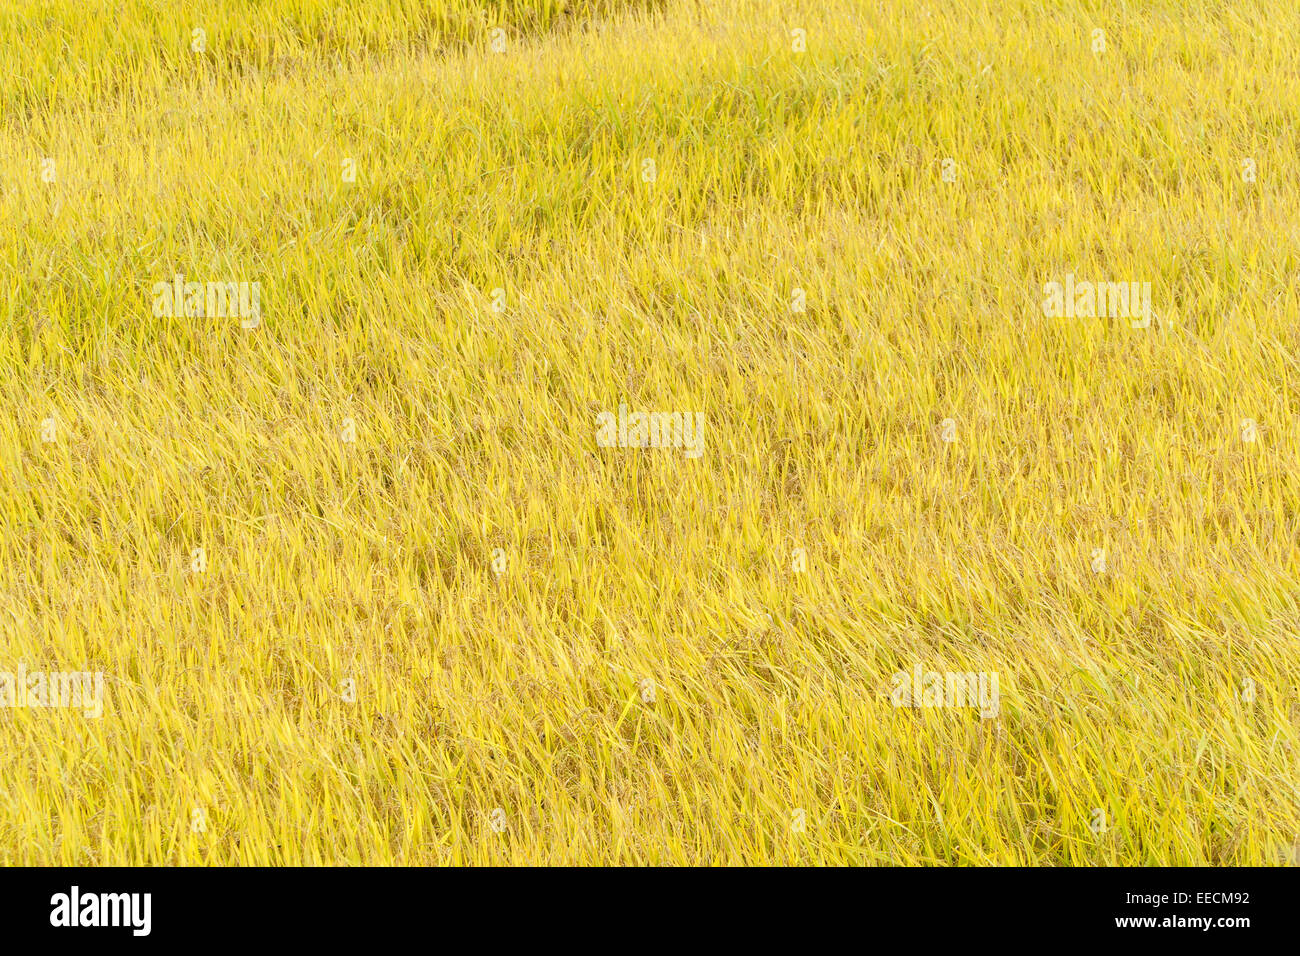 Vue d'une pleine maturité paddy riz doré à l'automne Banque D'Images